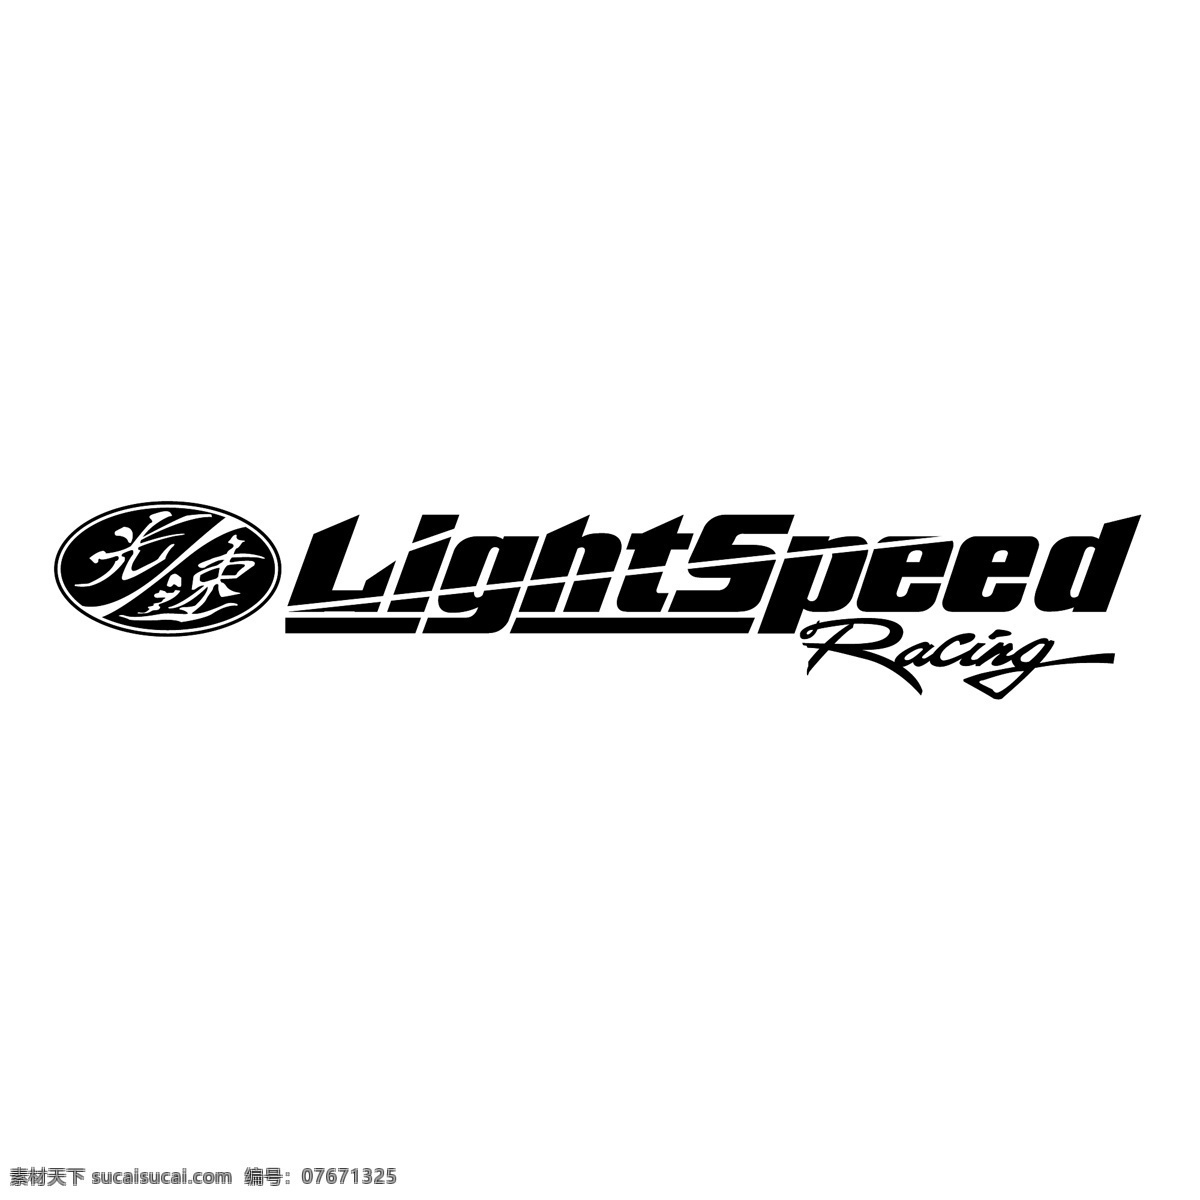 光 速度 赛马 自由 之光 标志 光速 赛车 标识 psd源文件 logo设计